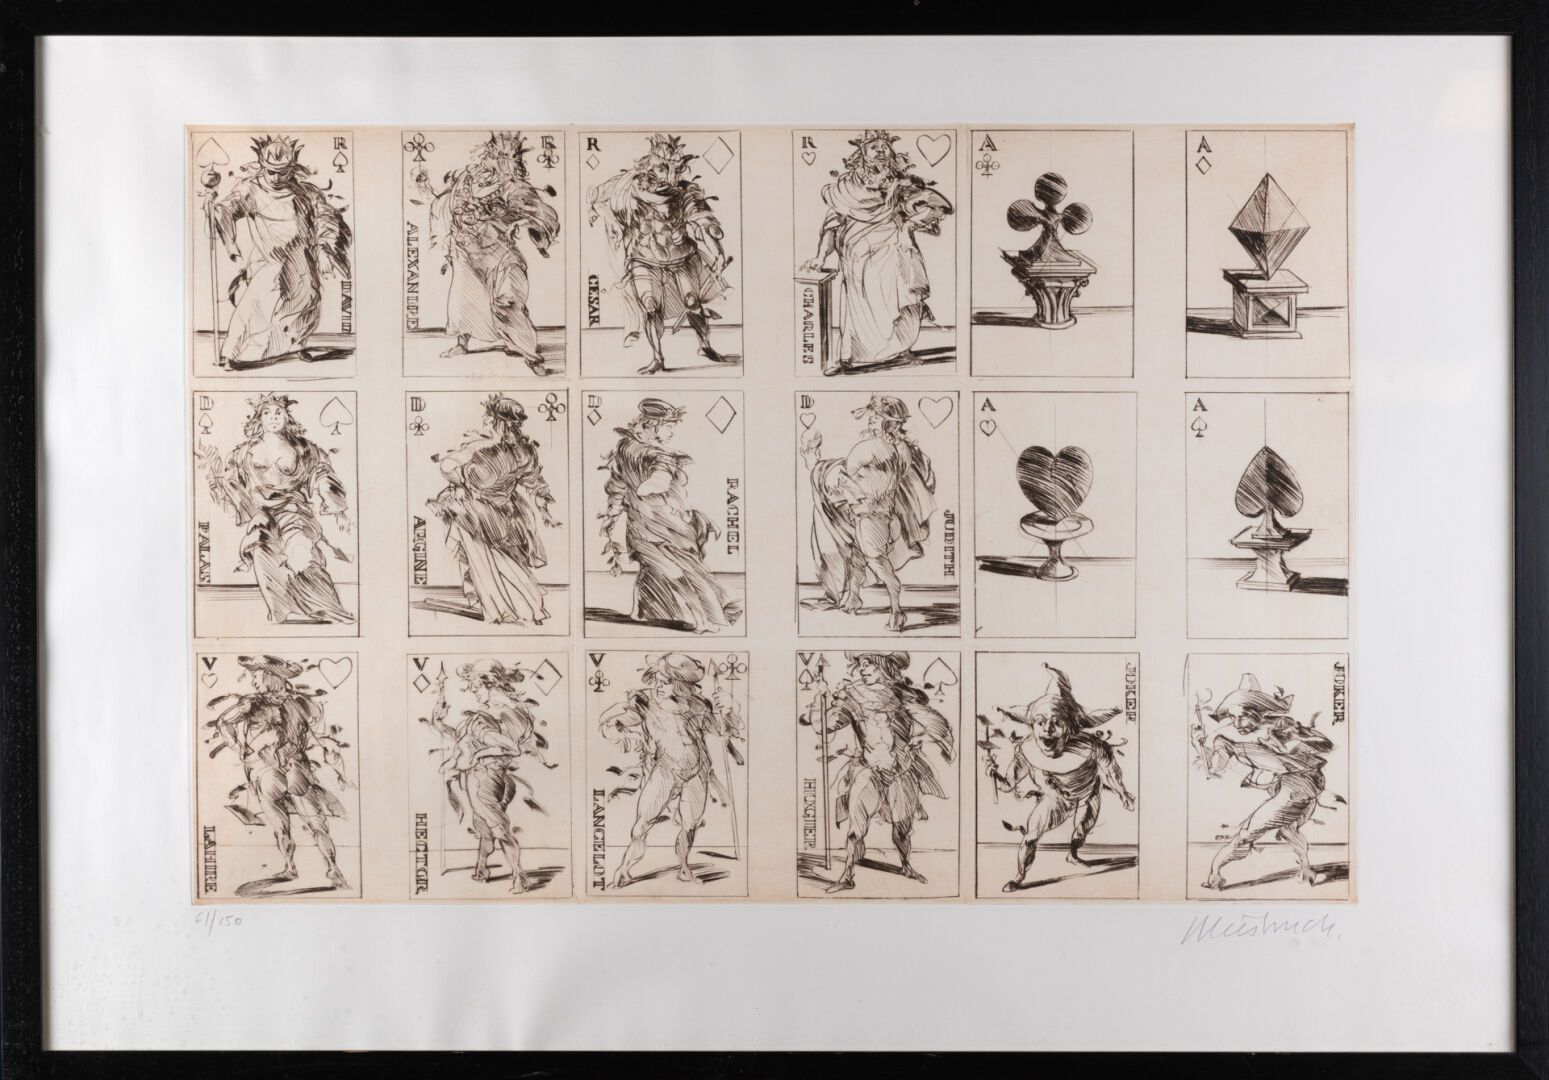 Null Claude WEISBUCH (1927-2014)
Jeux de cartes 
Pointe sèche 
48 x 71 cm à vue